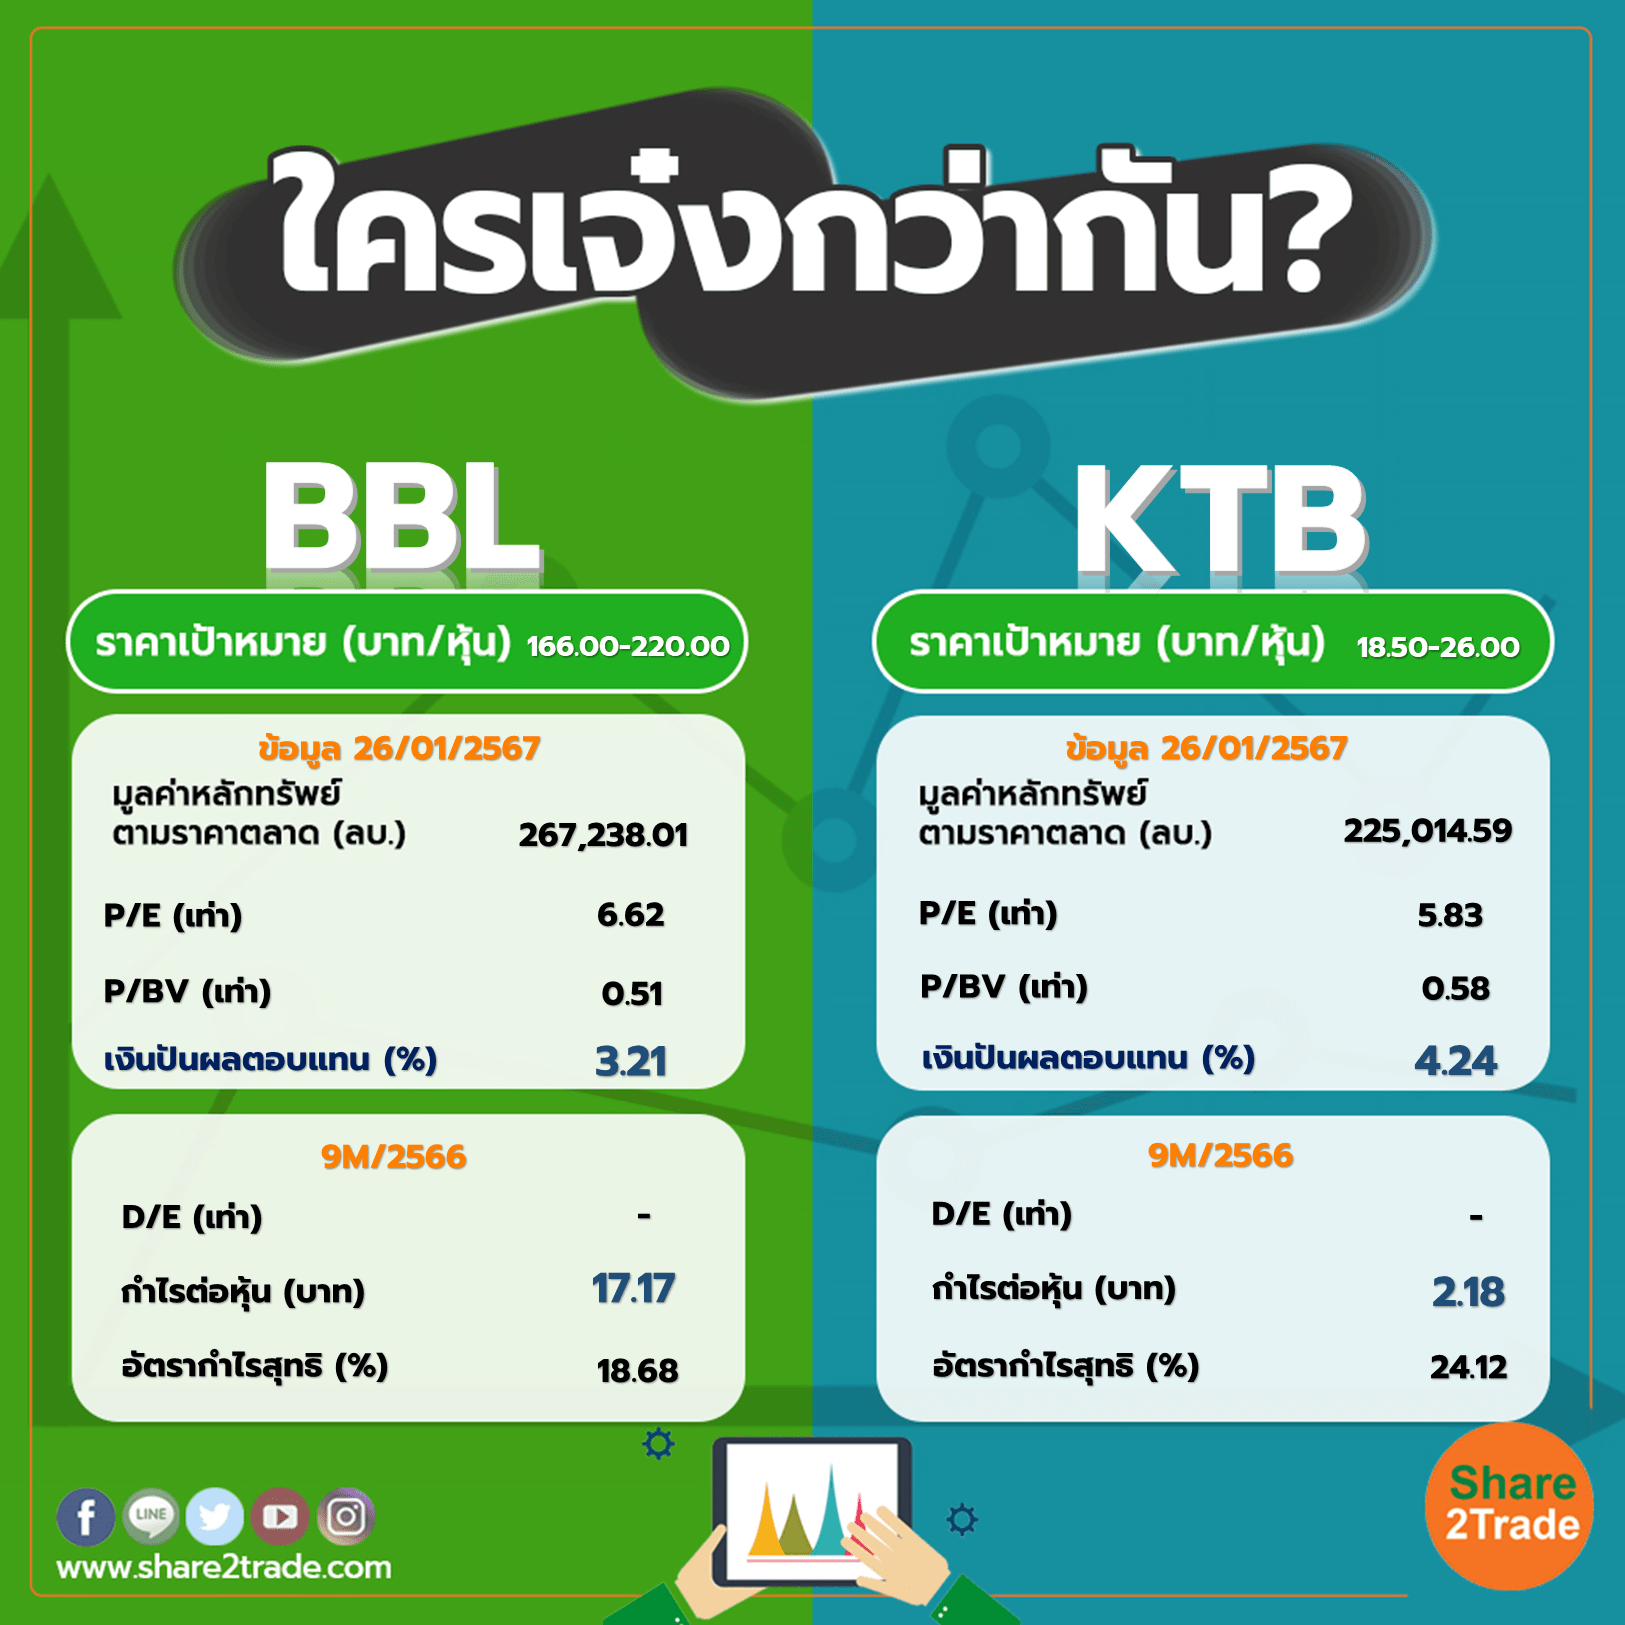 ใครเจ๋งกว่ากัน "BBL" VS "KTB"